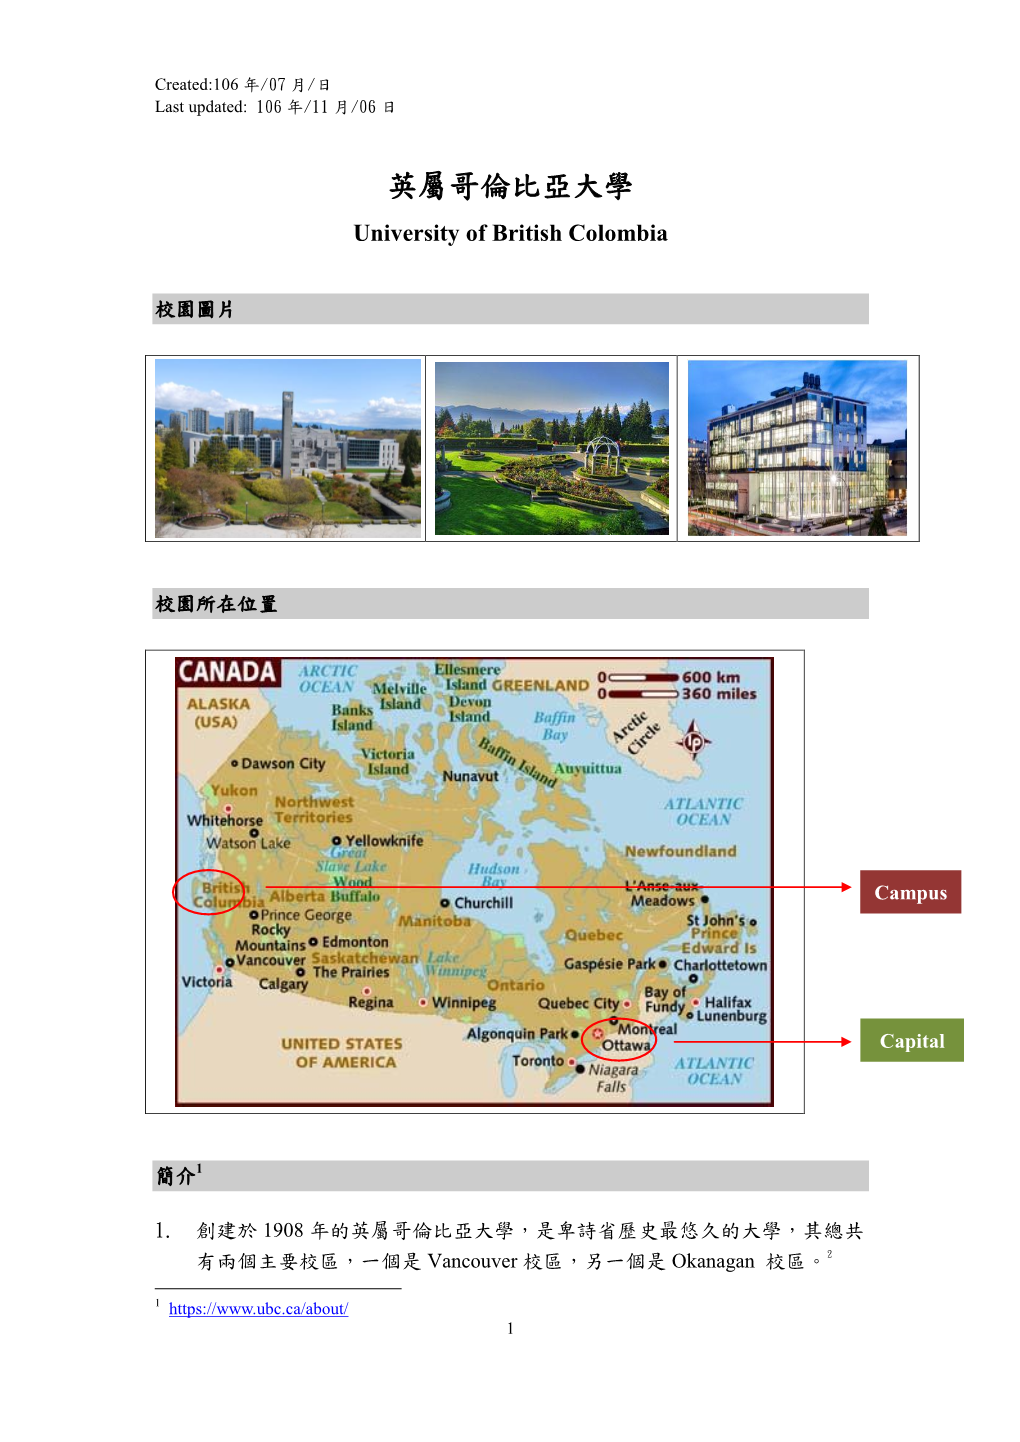 英屬哥倫比亞大學 University of British Colombia